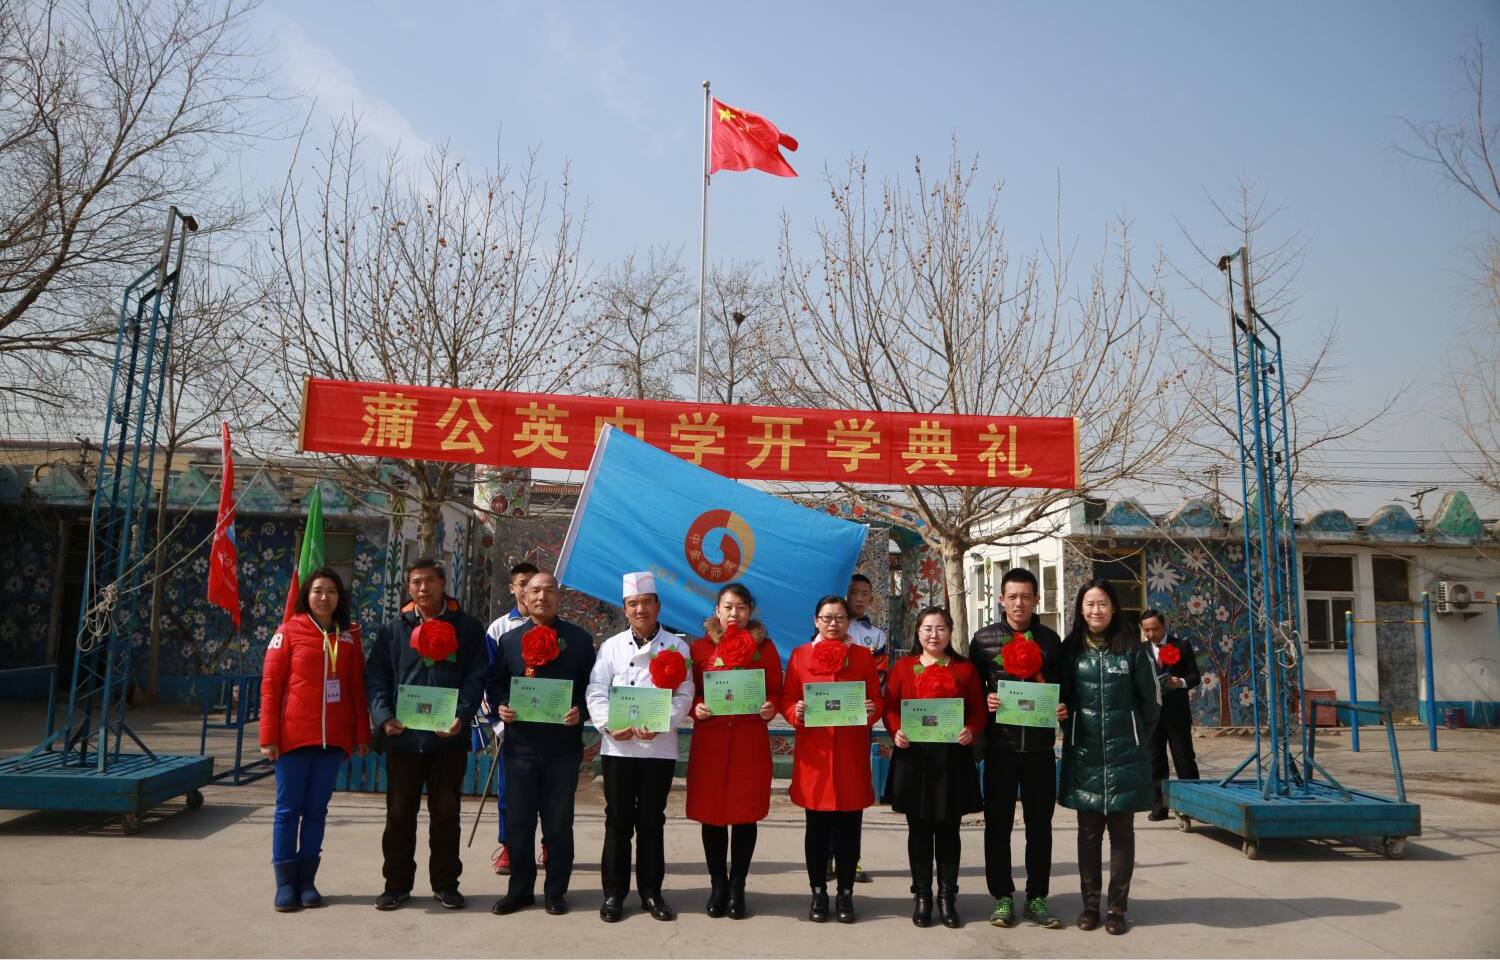 6. CICC Teacher Development Fund in Dandelion School (Daxing District, Beijing)